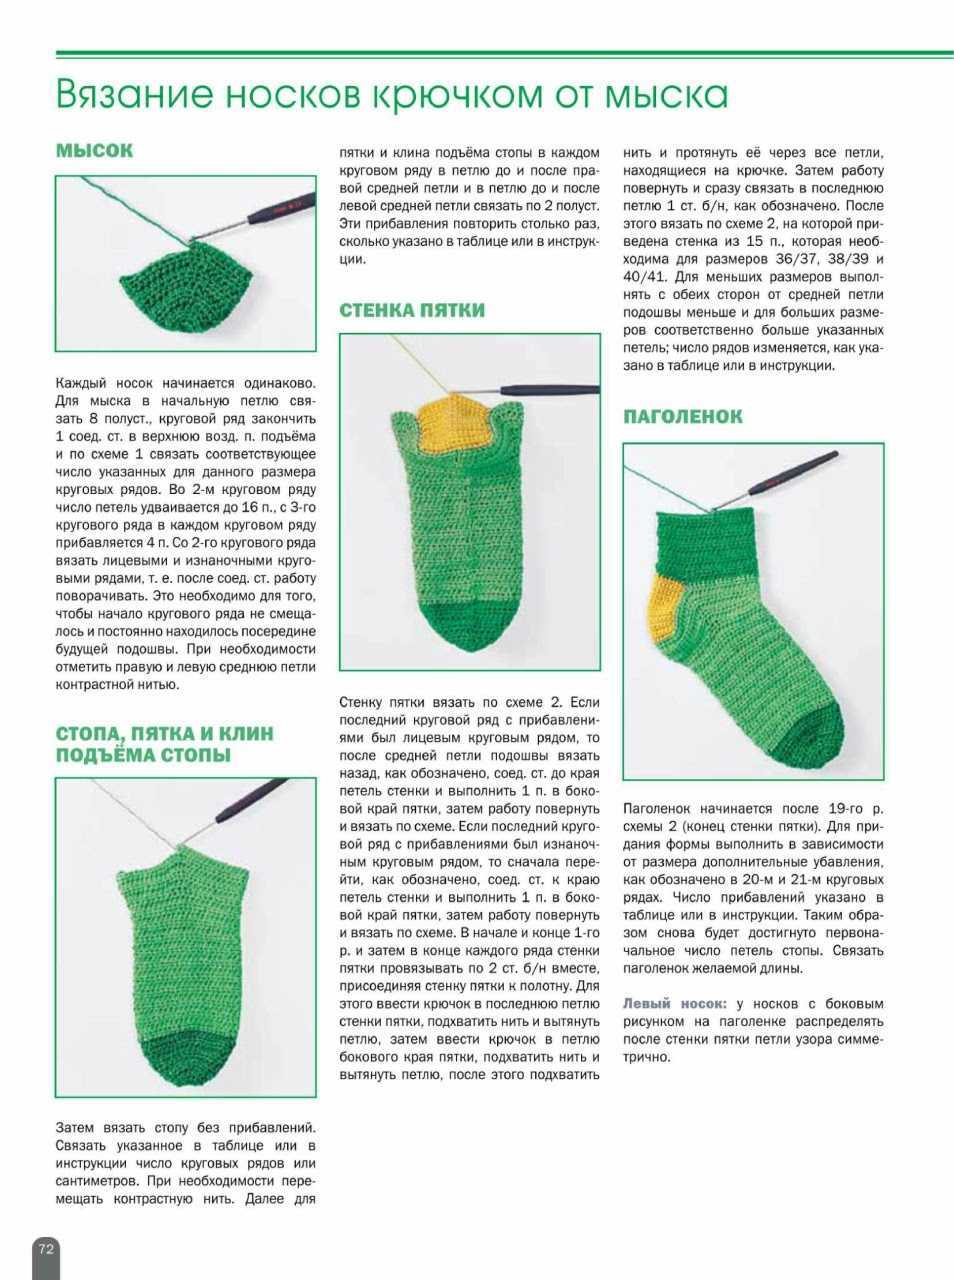 Как связать носки пошаговое